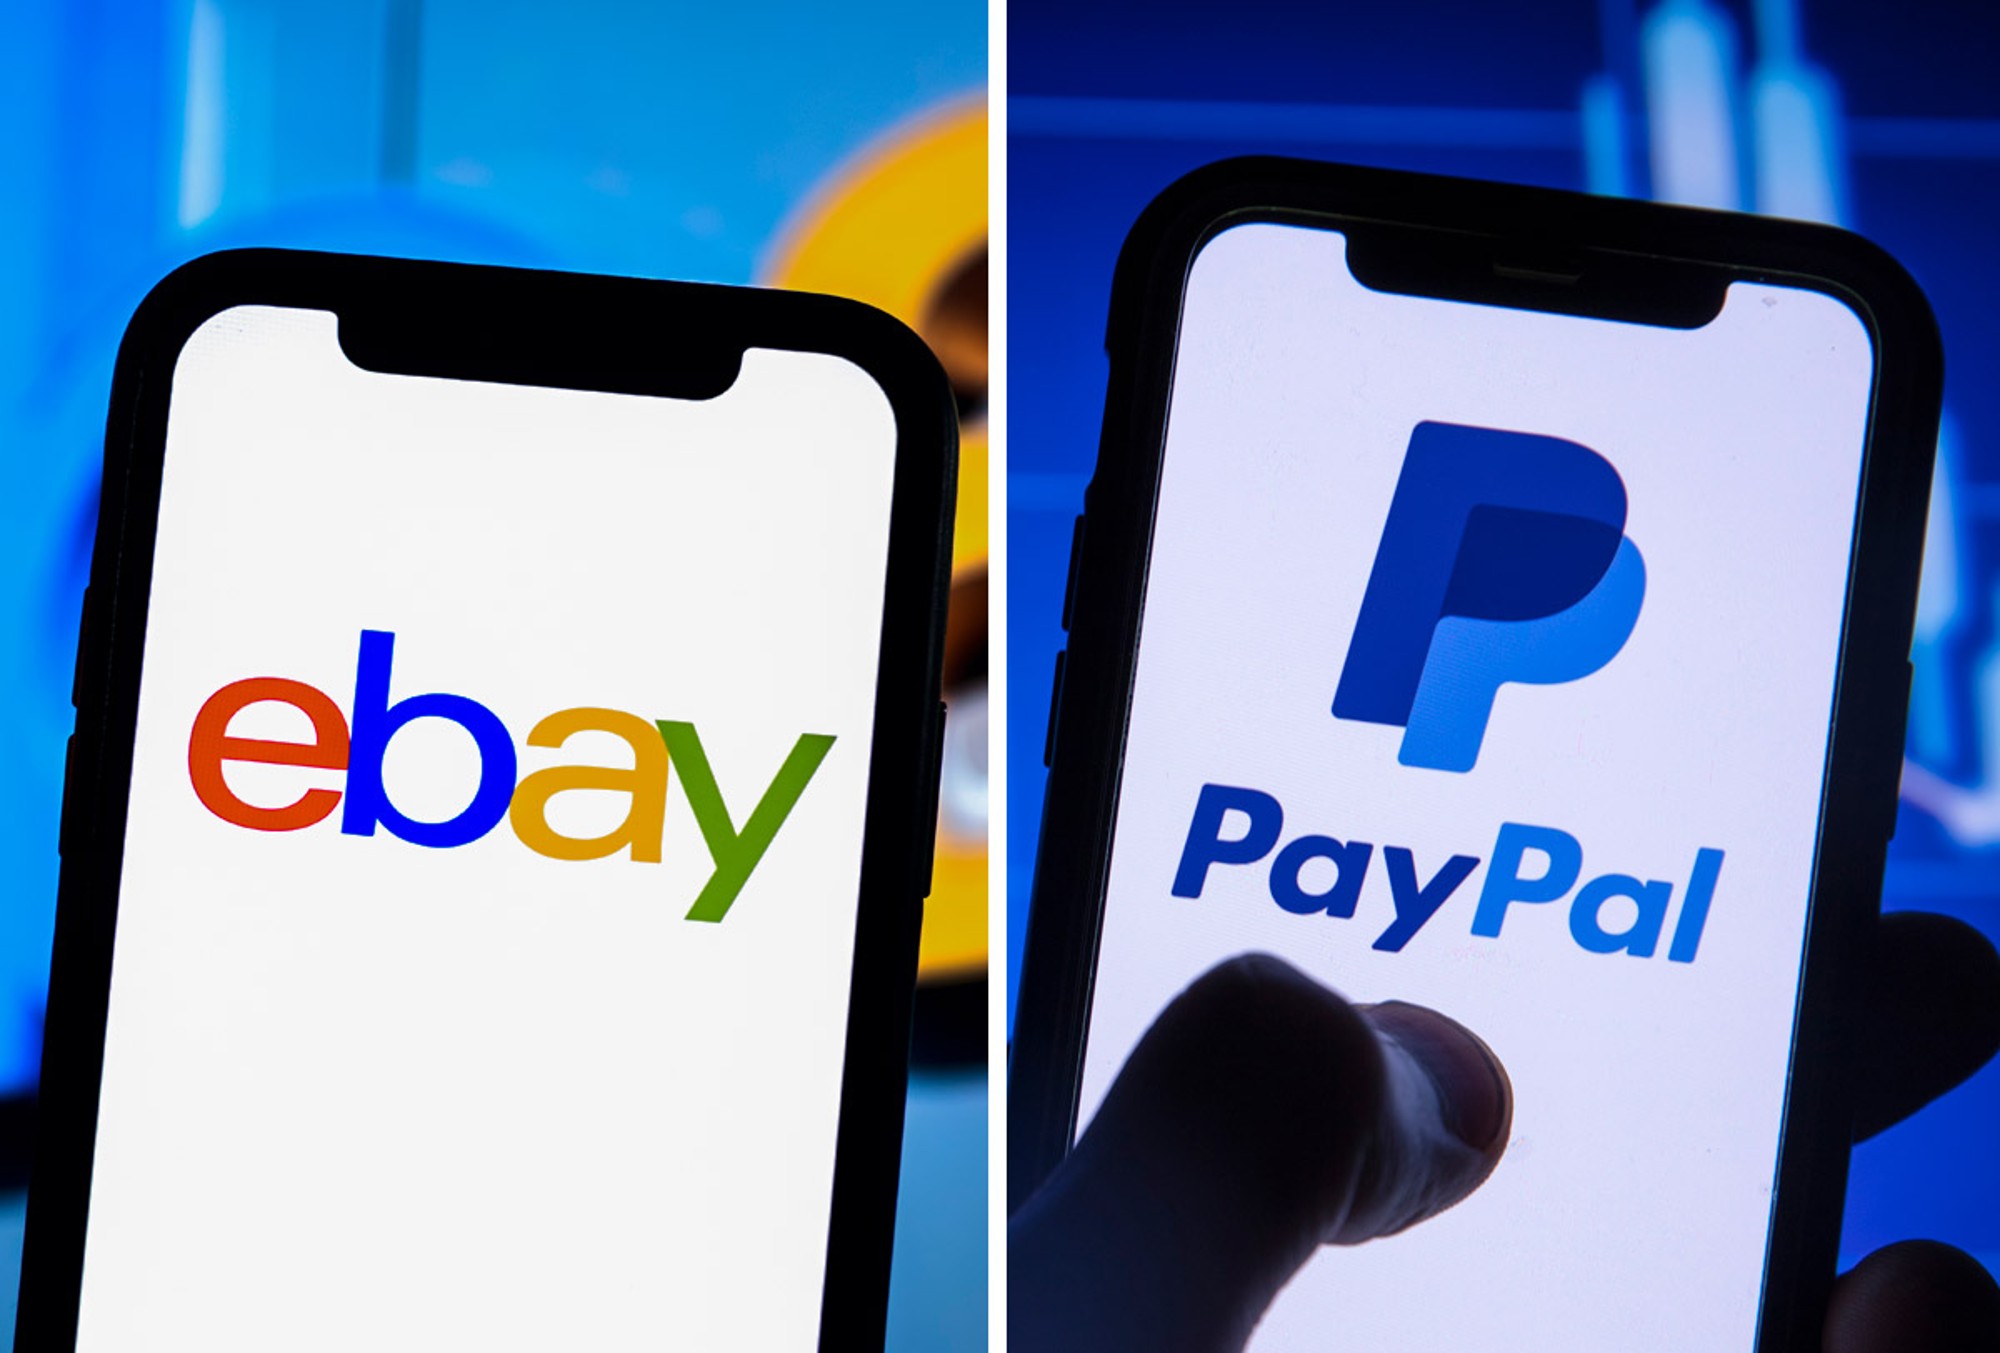 eBay anunció que ya no aceptará pagos con PayPal y usará su propia plataforma.